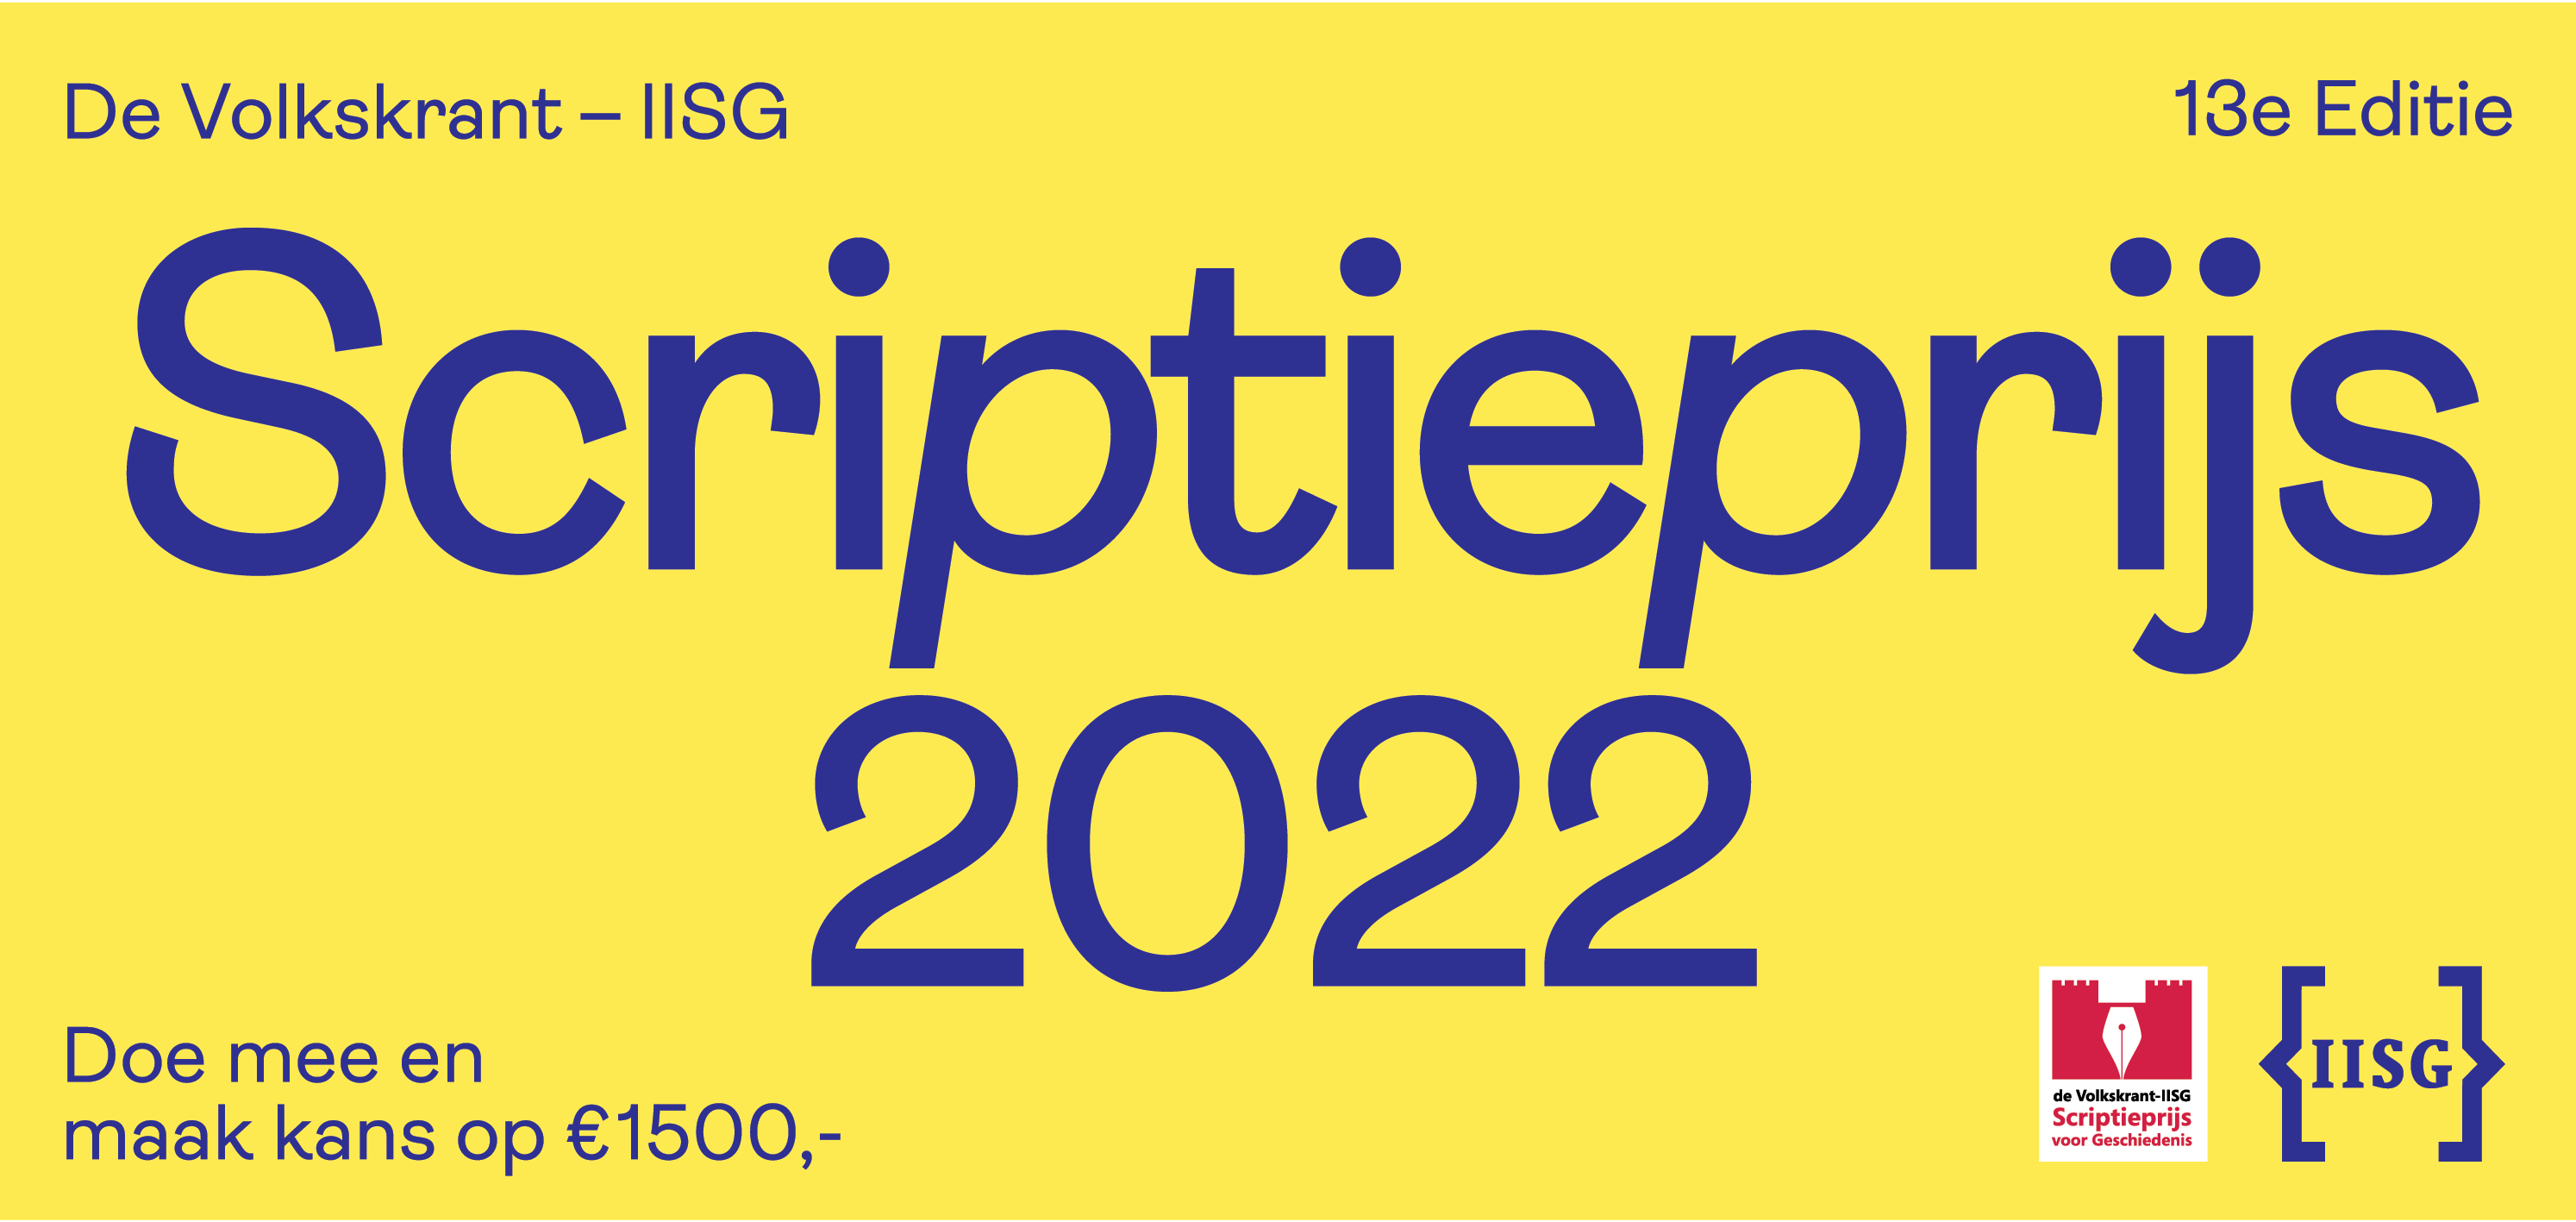 Scriptieprijs 2022